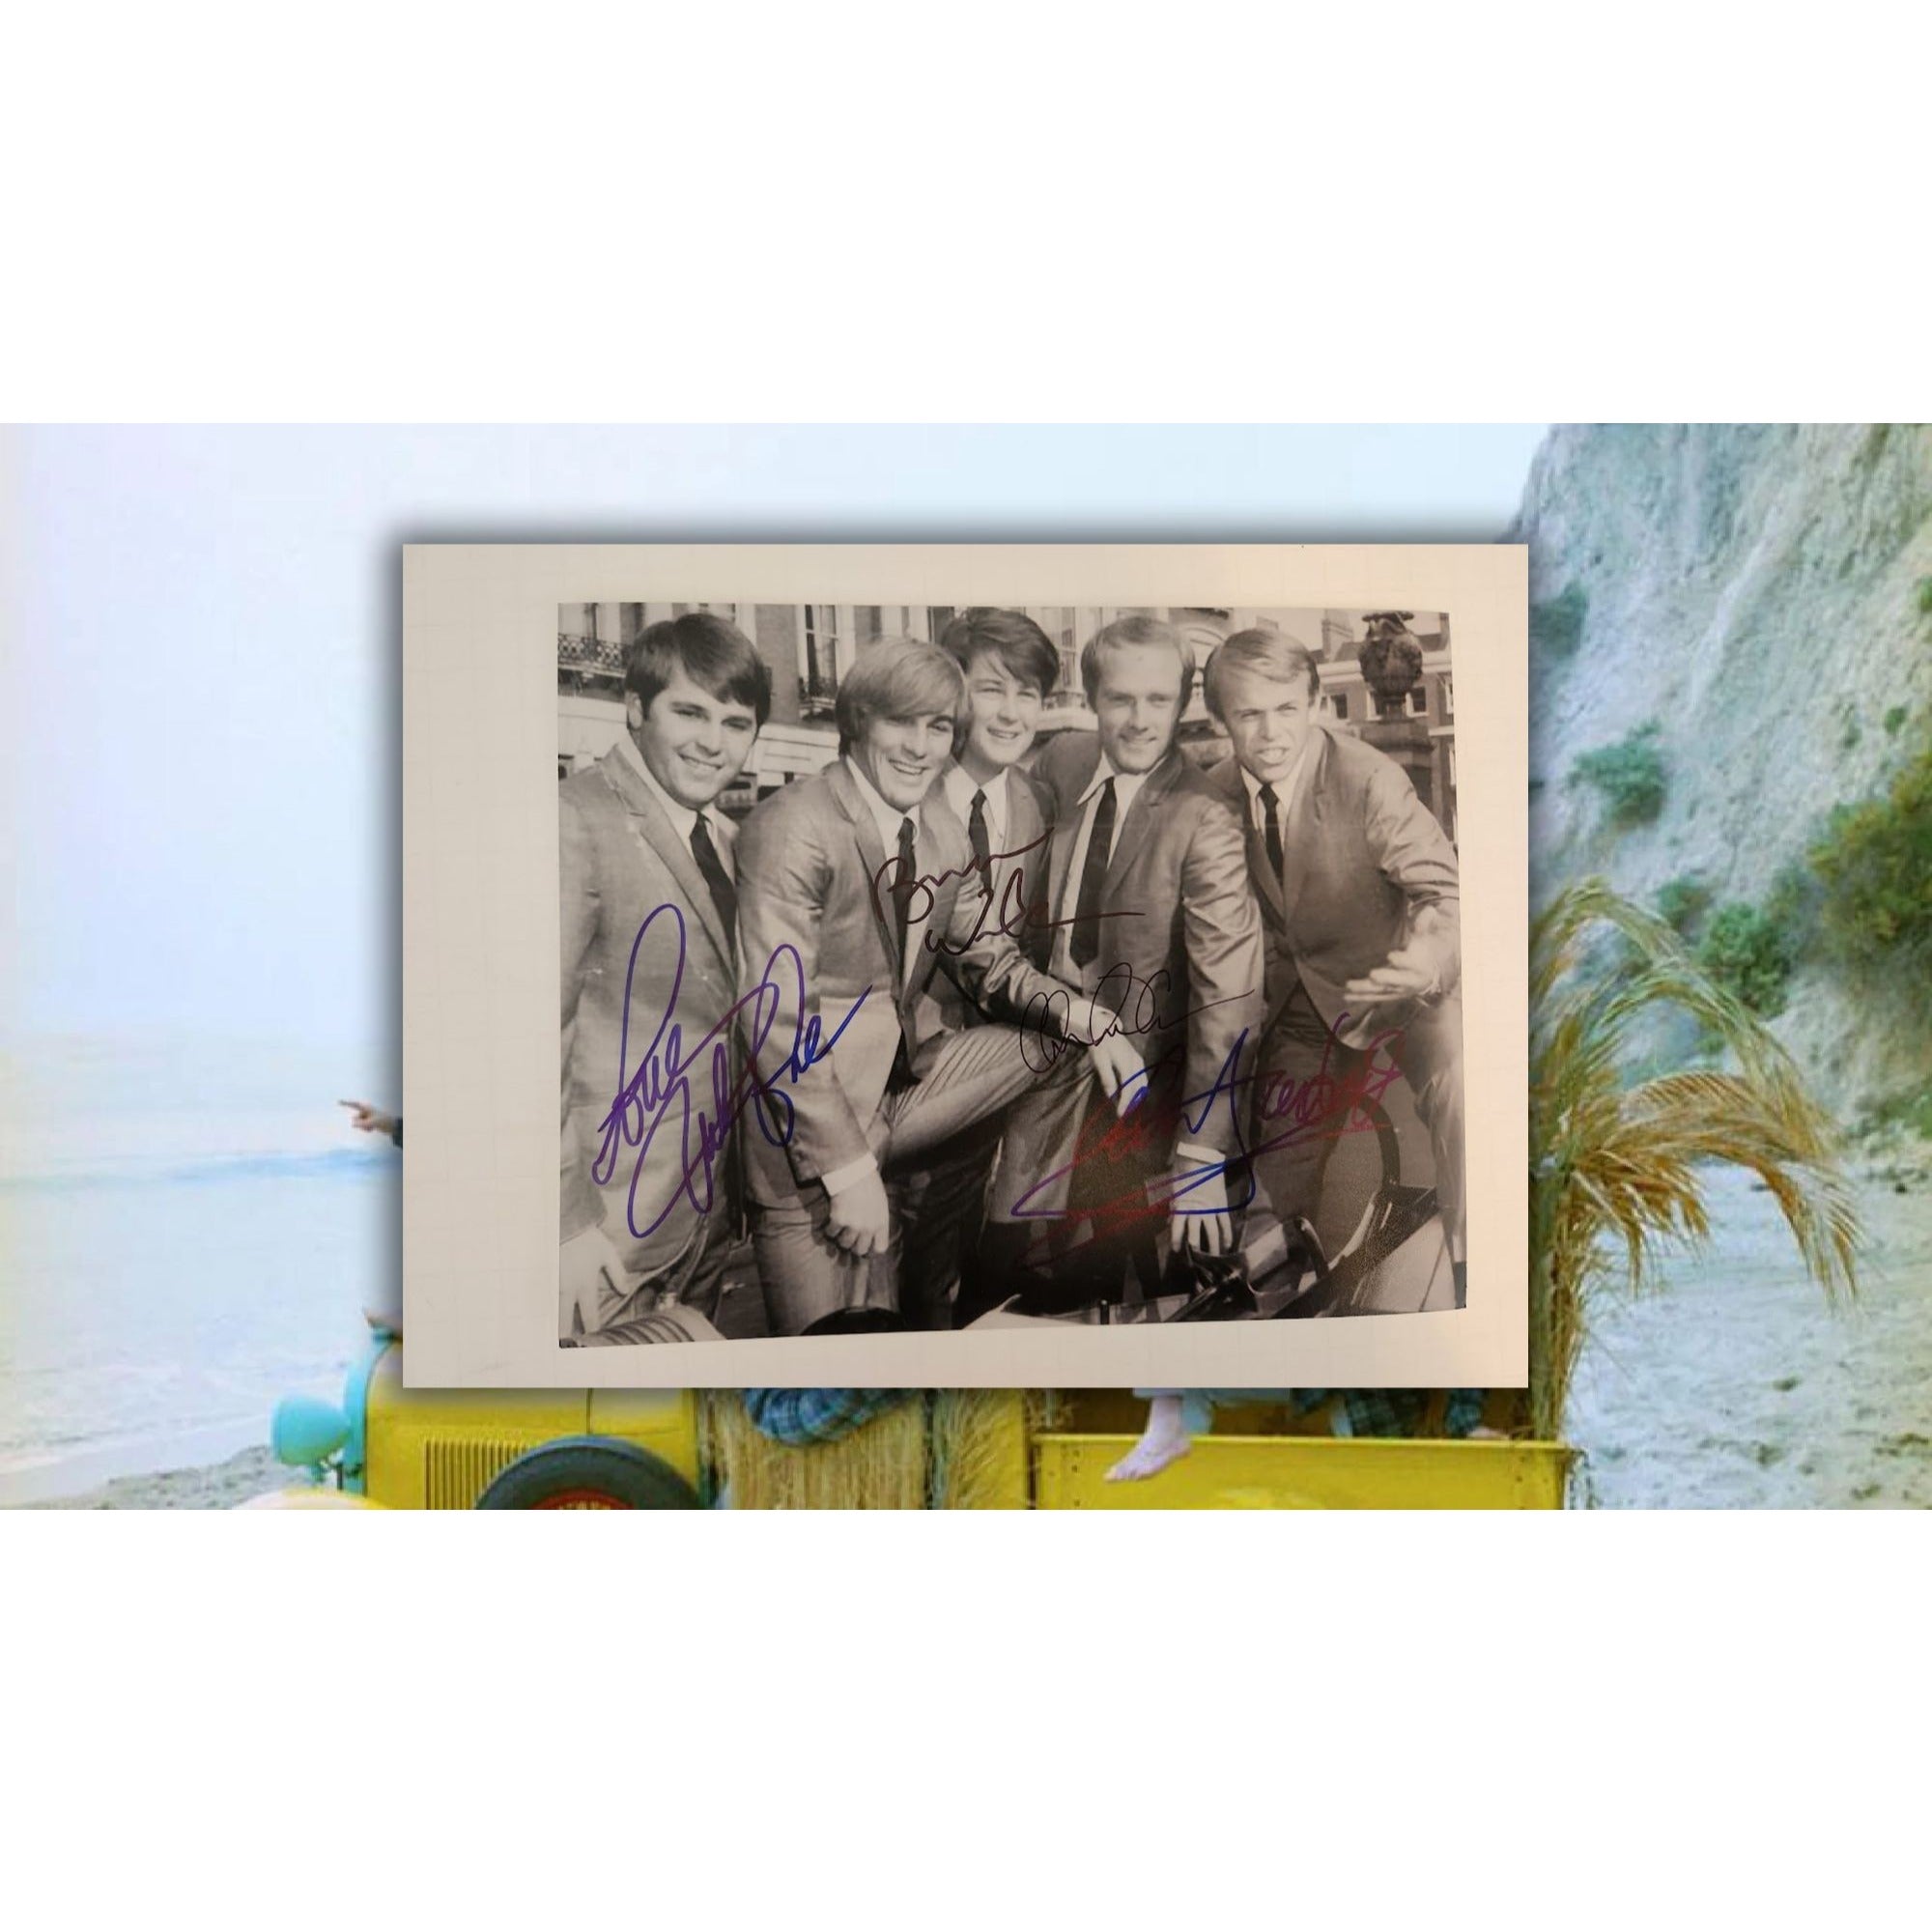 The Beach Boys Brian , Carl Wilson, Mike Love, Al Jardine, The Beach Boys 8x10 photo signed